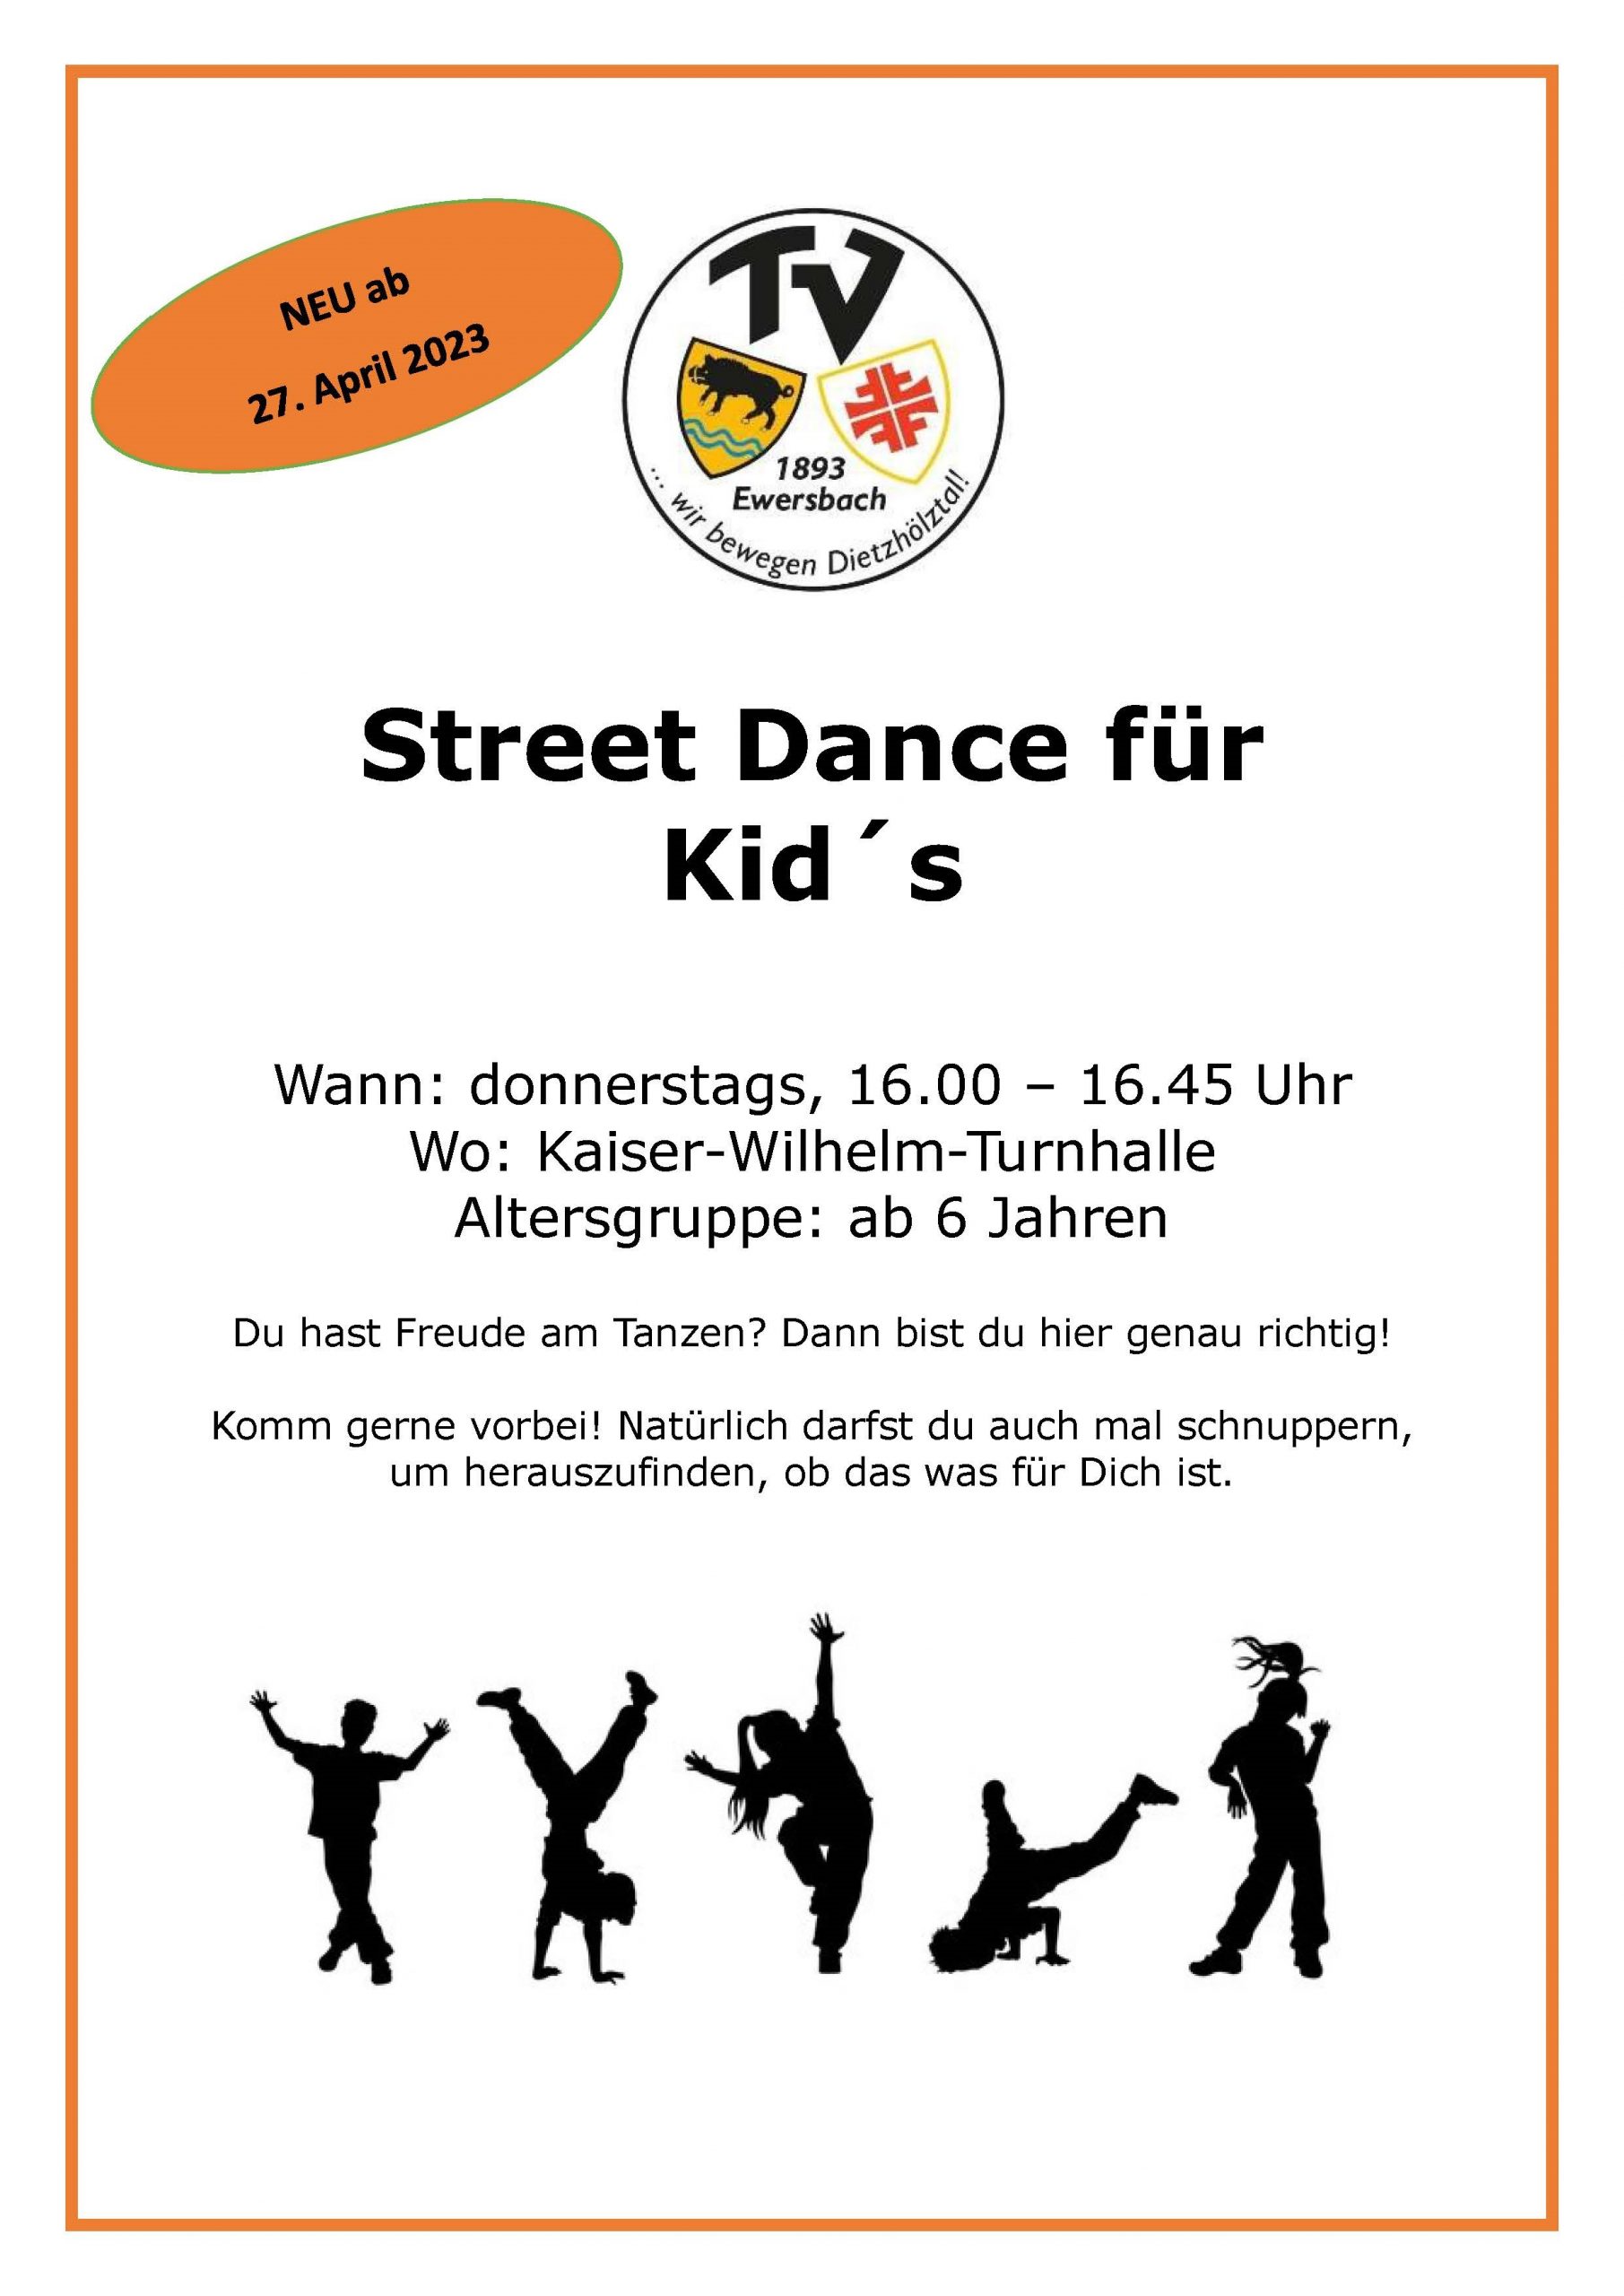 NEU: Street Dance für Kids